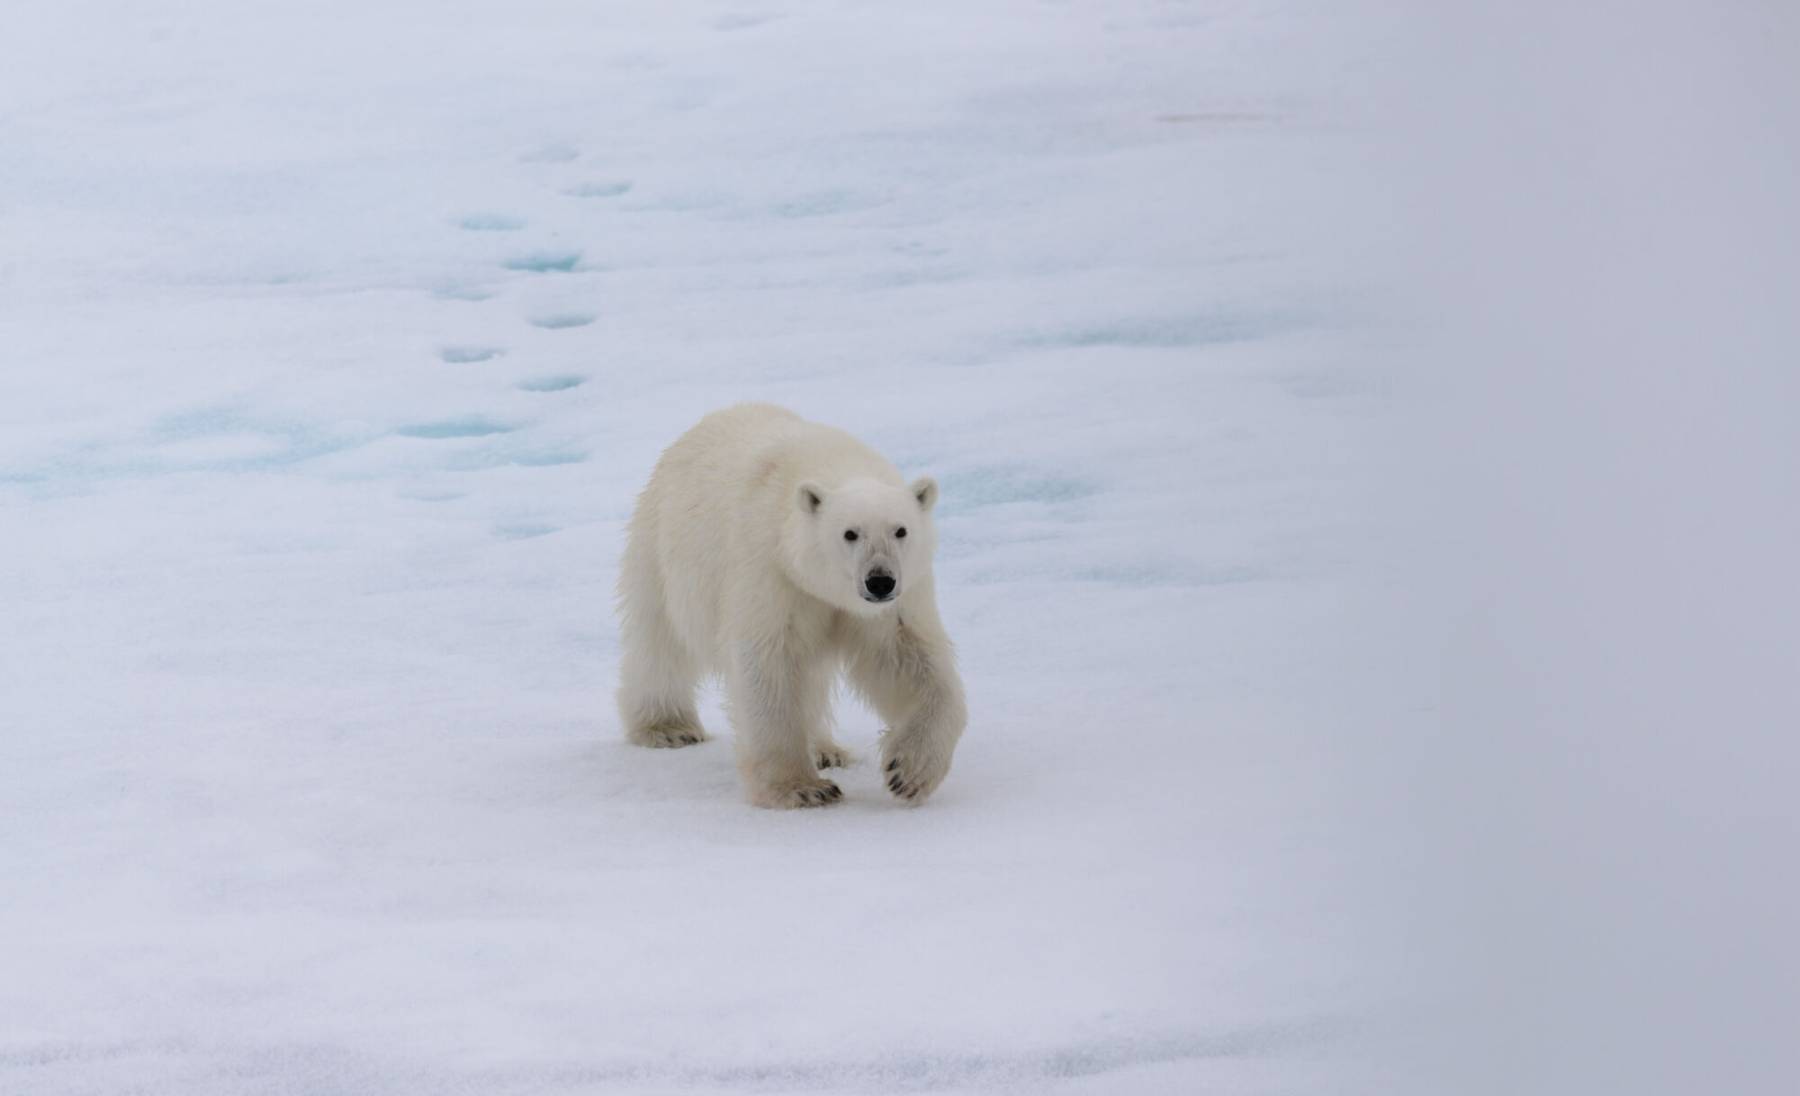 Pilt jääkarust võitis parima eluslooduse foto auhinna